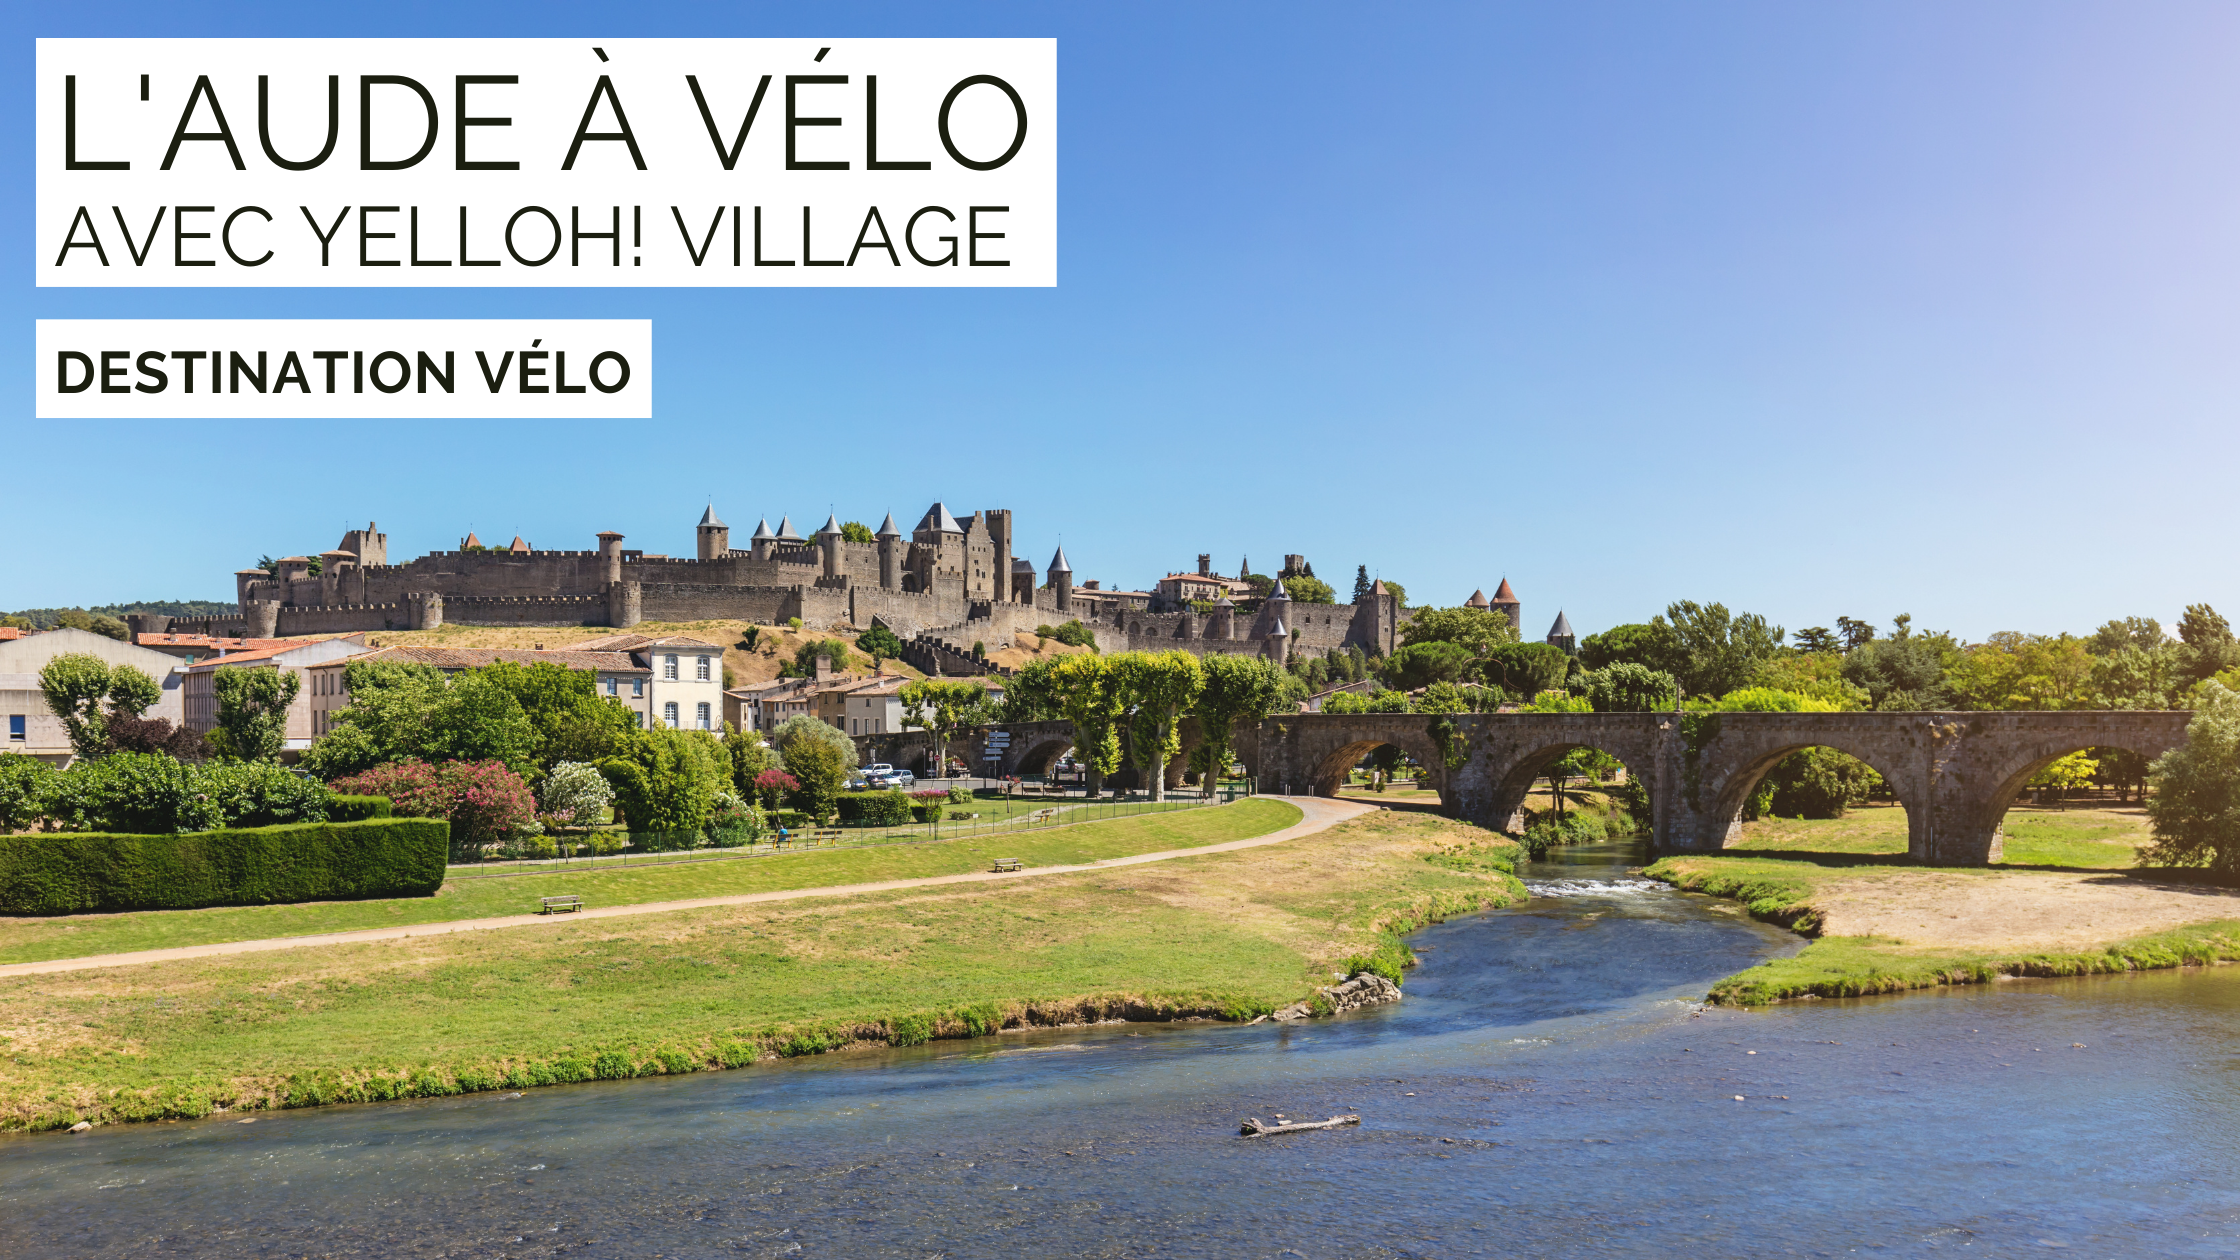 Visiter l’Aude à vélo avec Yelloh! Village